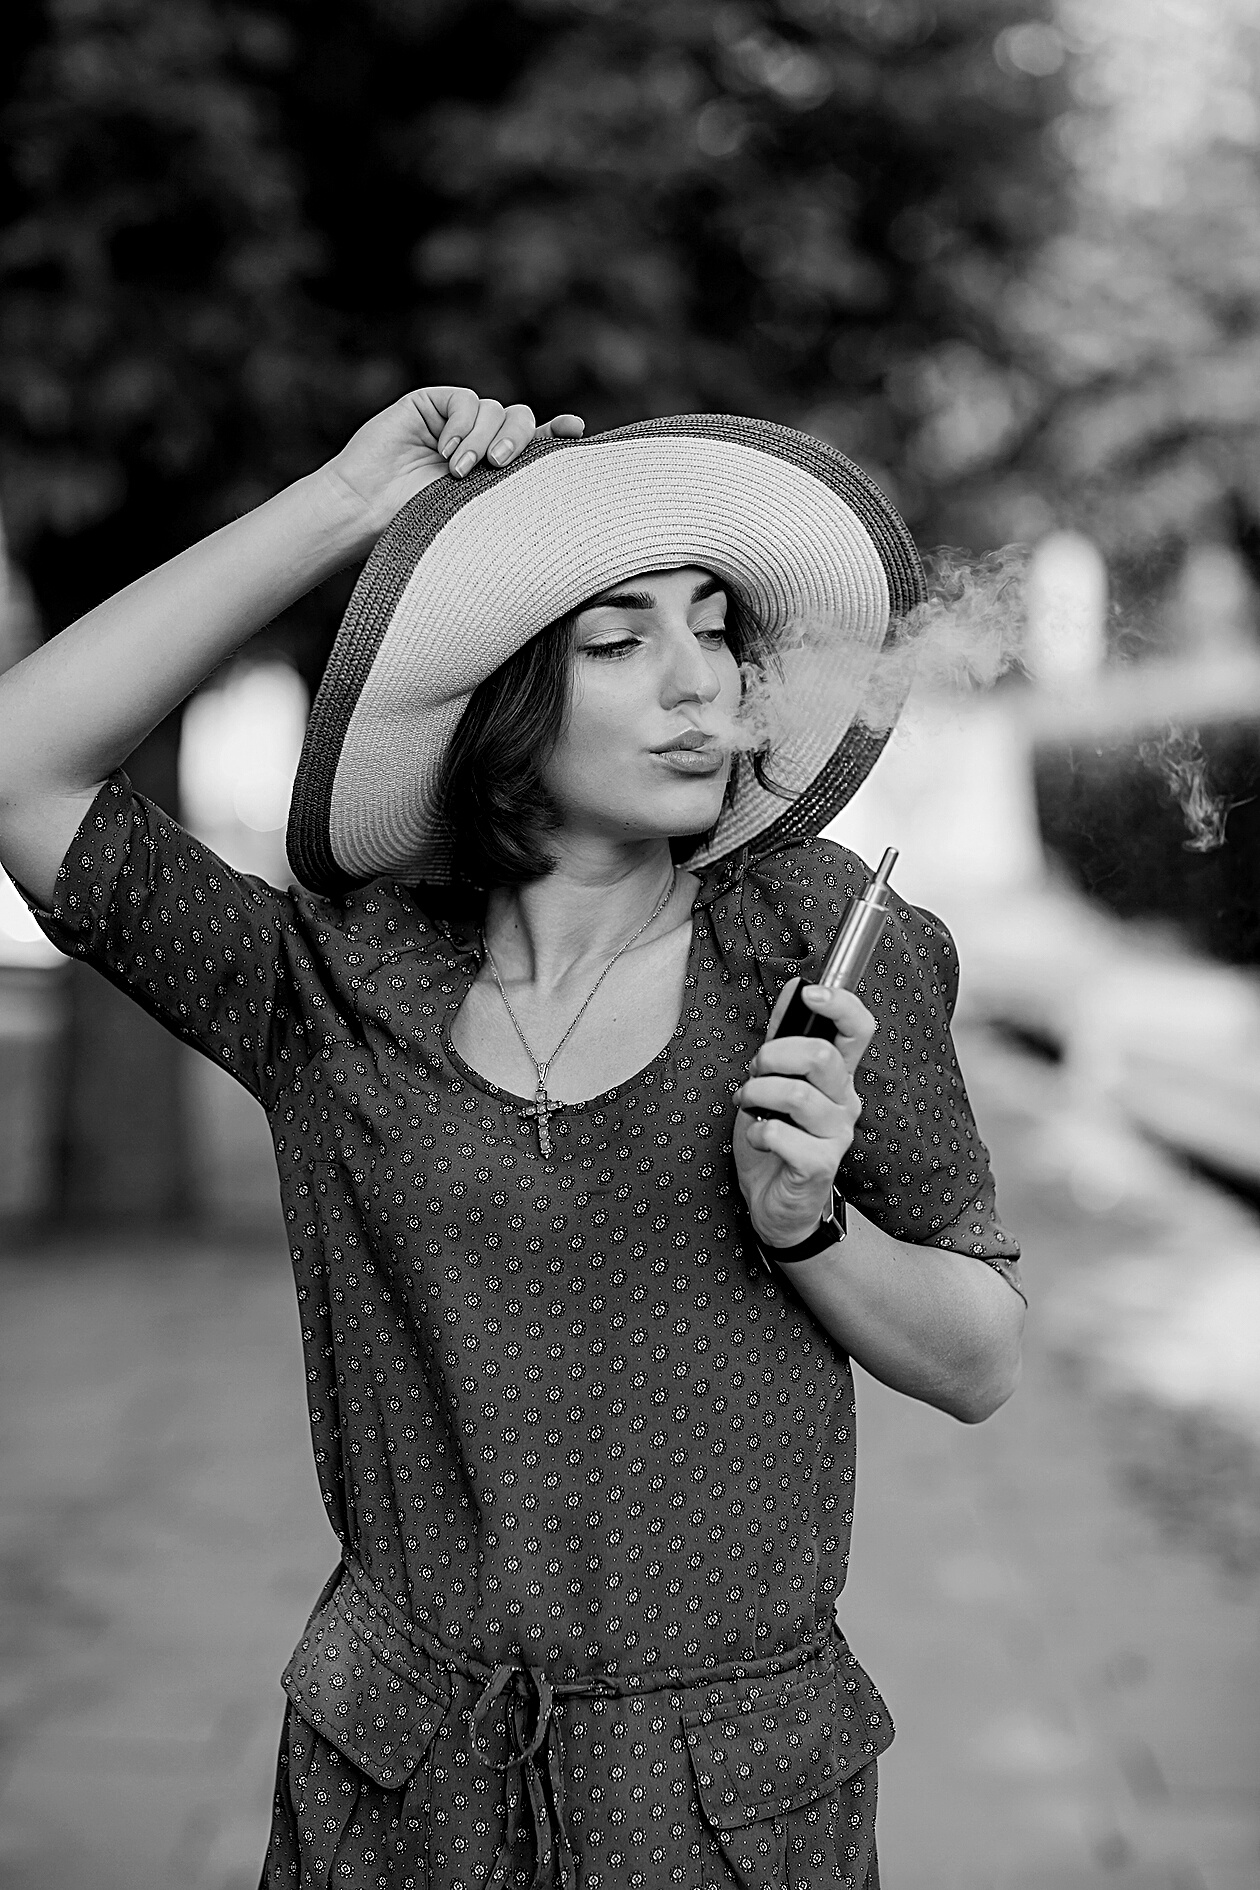 Girl with E-Cigarette